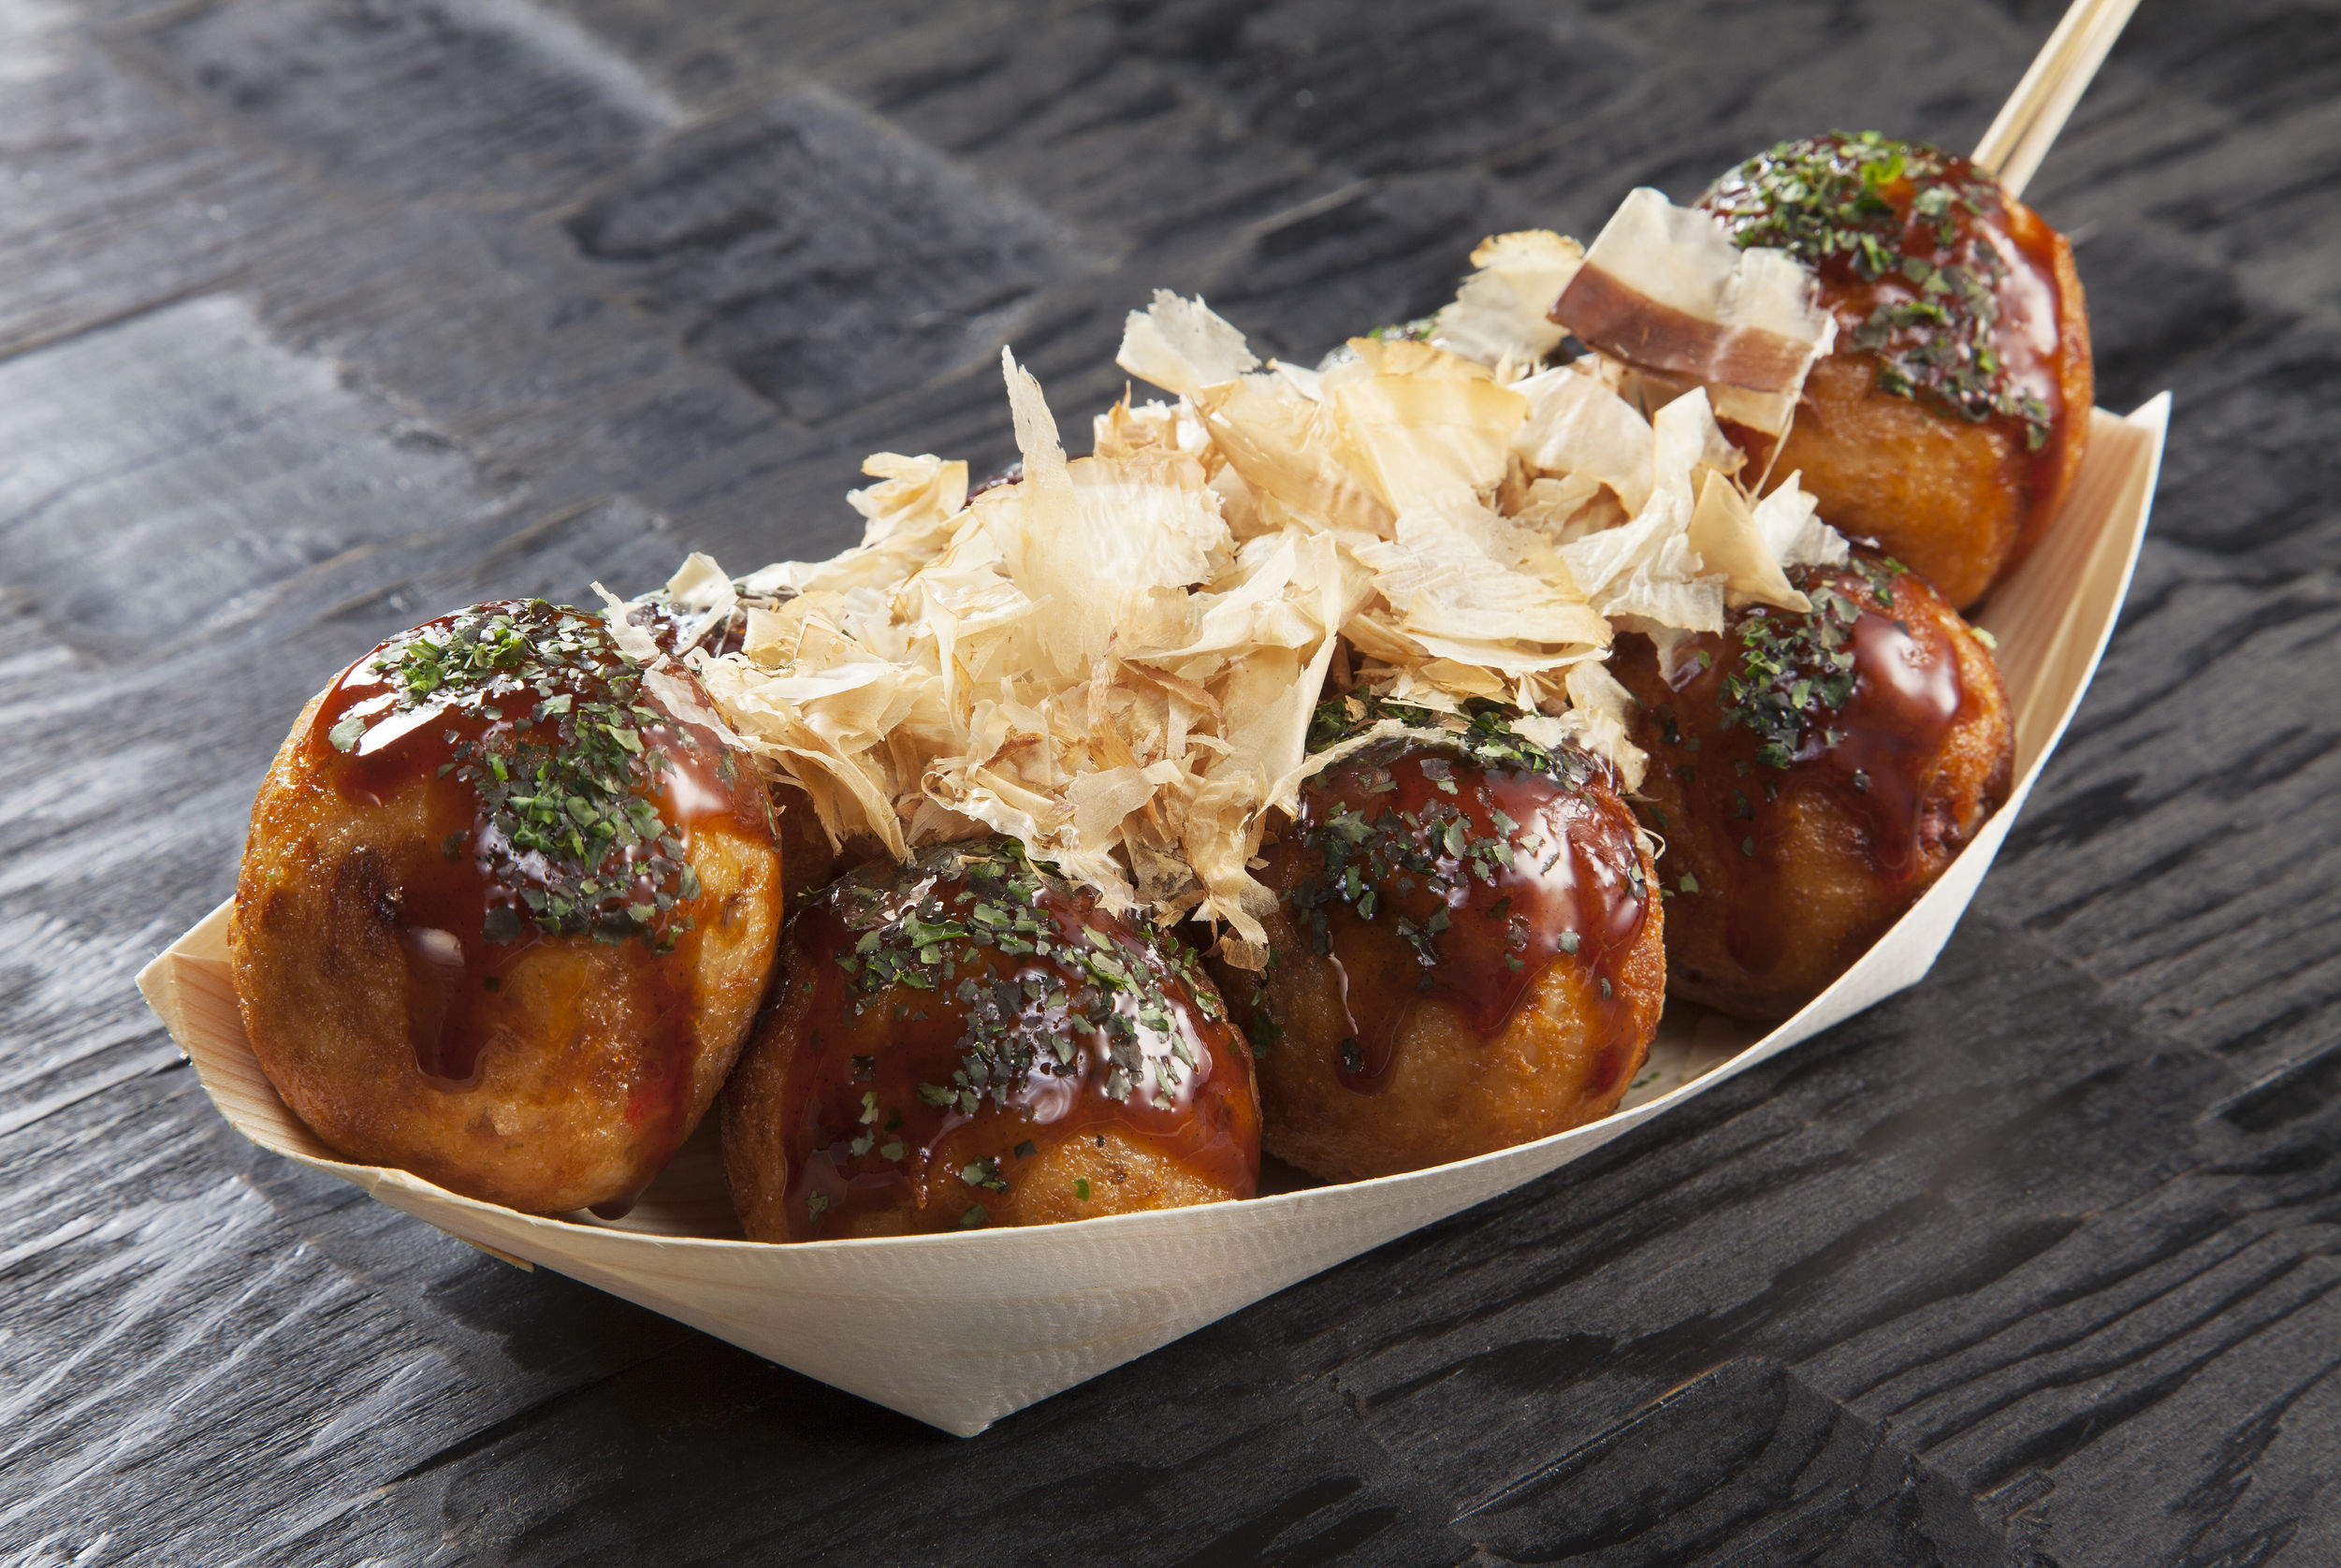 63994359 - takoyaki, octopus balls, japanese food, on a black background